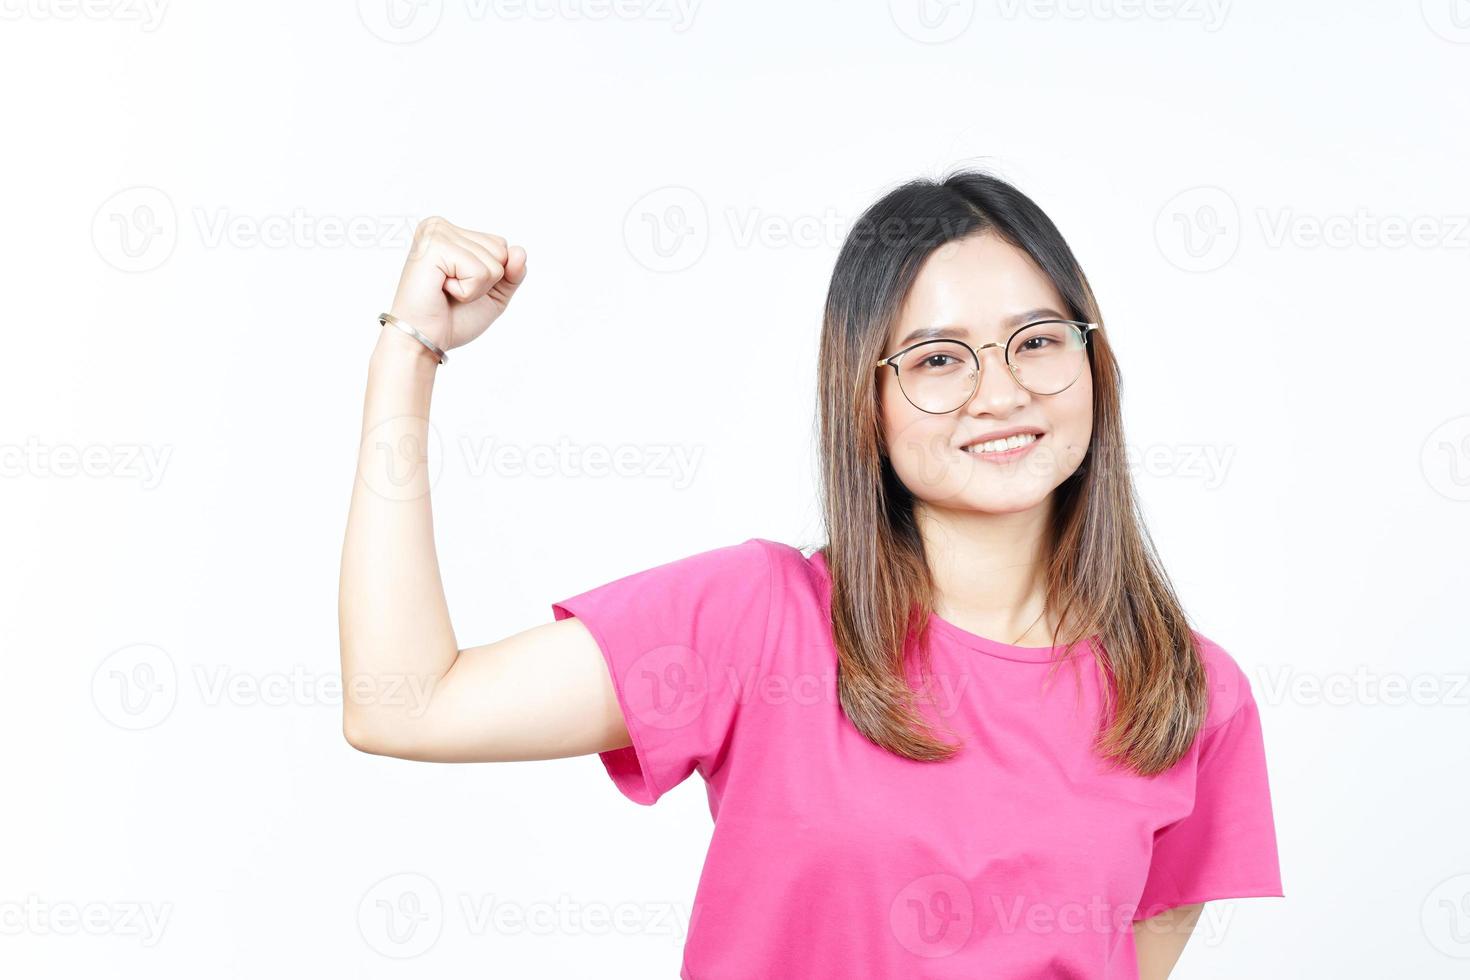 tonen sterkte en stijgen armen van mooi Aziatisch vrouw geïsoleerd Aan wit achtergrond foto